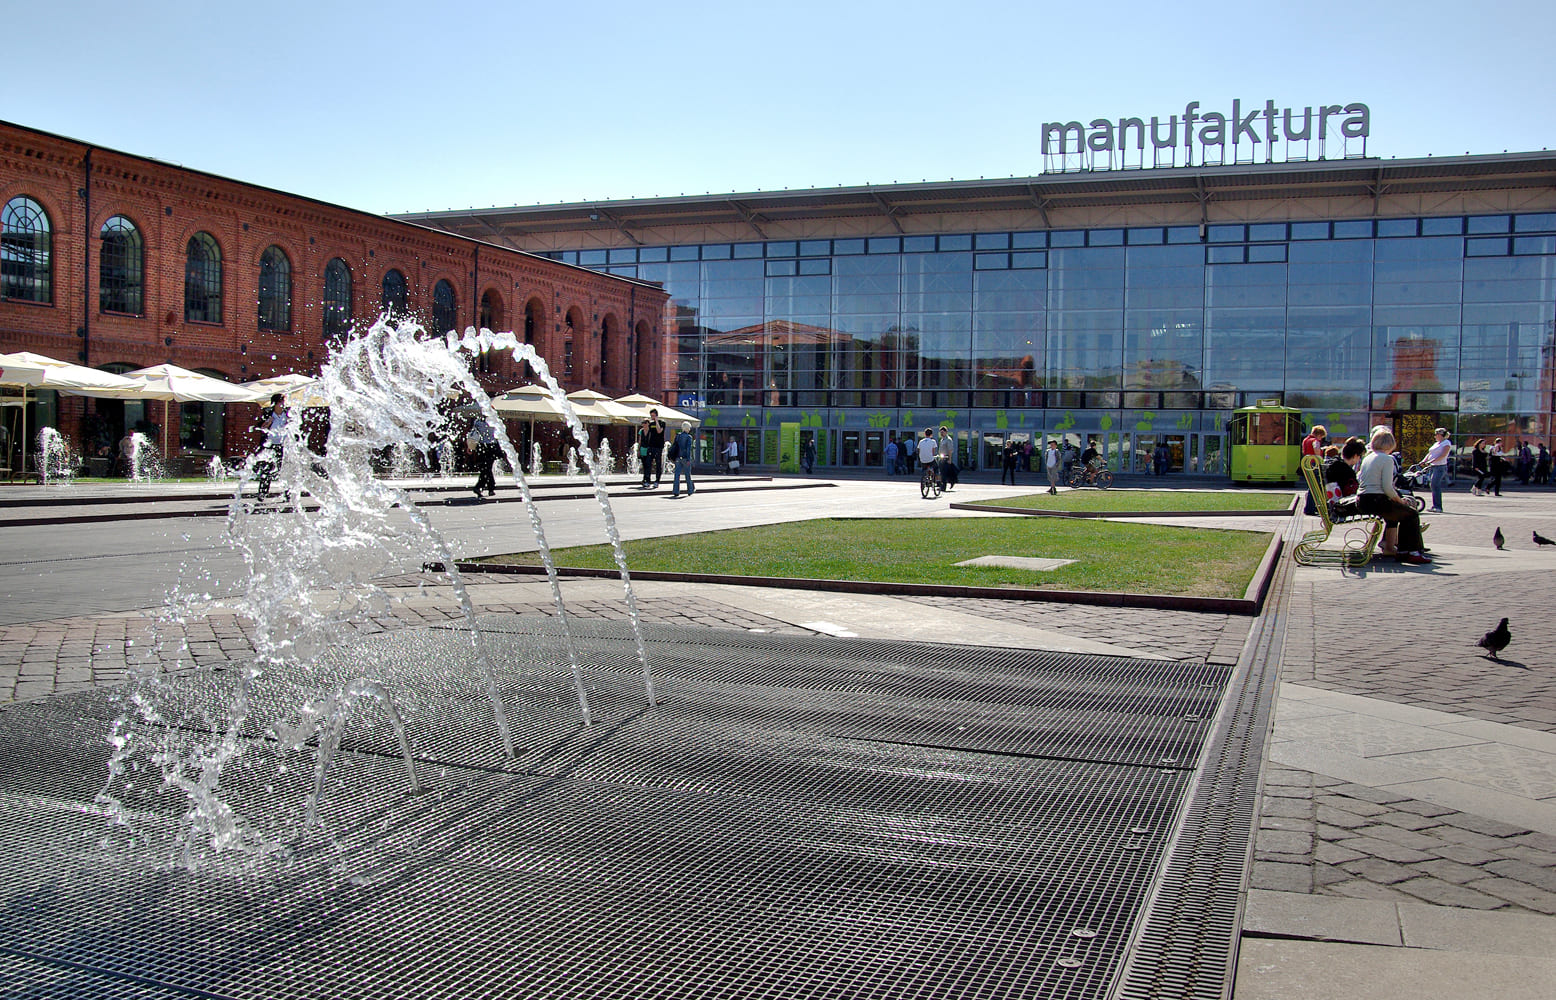 Manufaktura (Мануфактура) - это центр искусств, торговый центр и развлекательный комплекс в Лодзи, Польша.